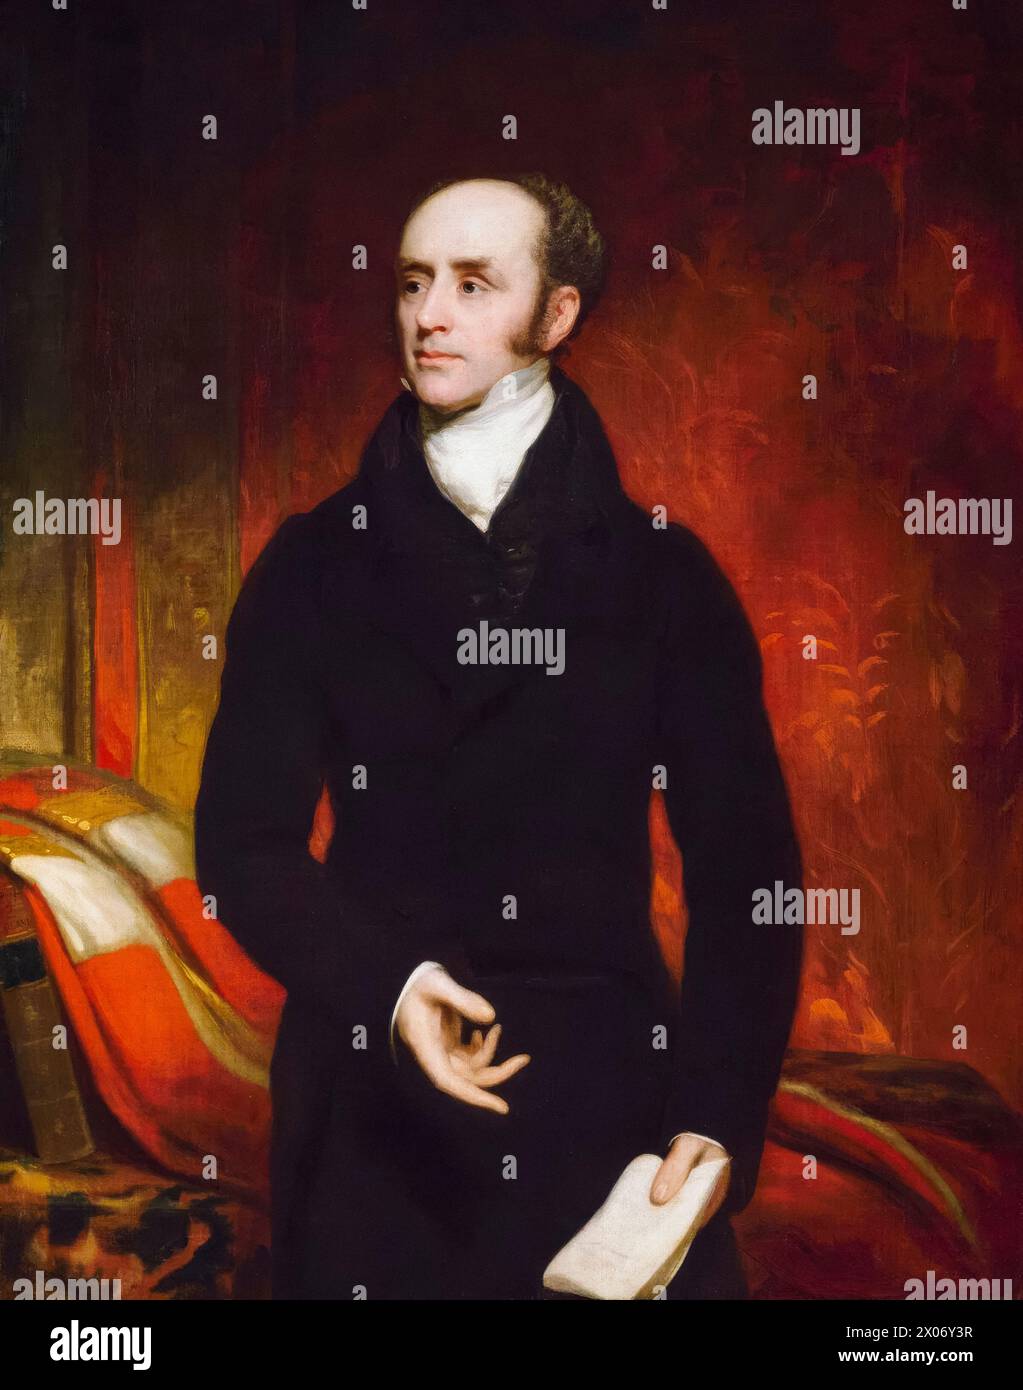 Charles Grey, 2e comte Grey (1764-1845) connu sous le nom de 'vicomte Howick', homme politique whig et premier ministre du Royaume-Uni de 1830 à 1834. Homonyme de 'Earl Grey tea', portrait peint à l'huile sur toile par Thomas Phillips, vers 1820 Banque D'Images